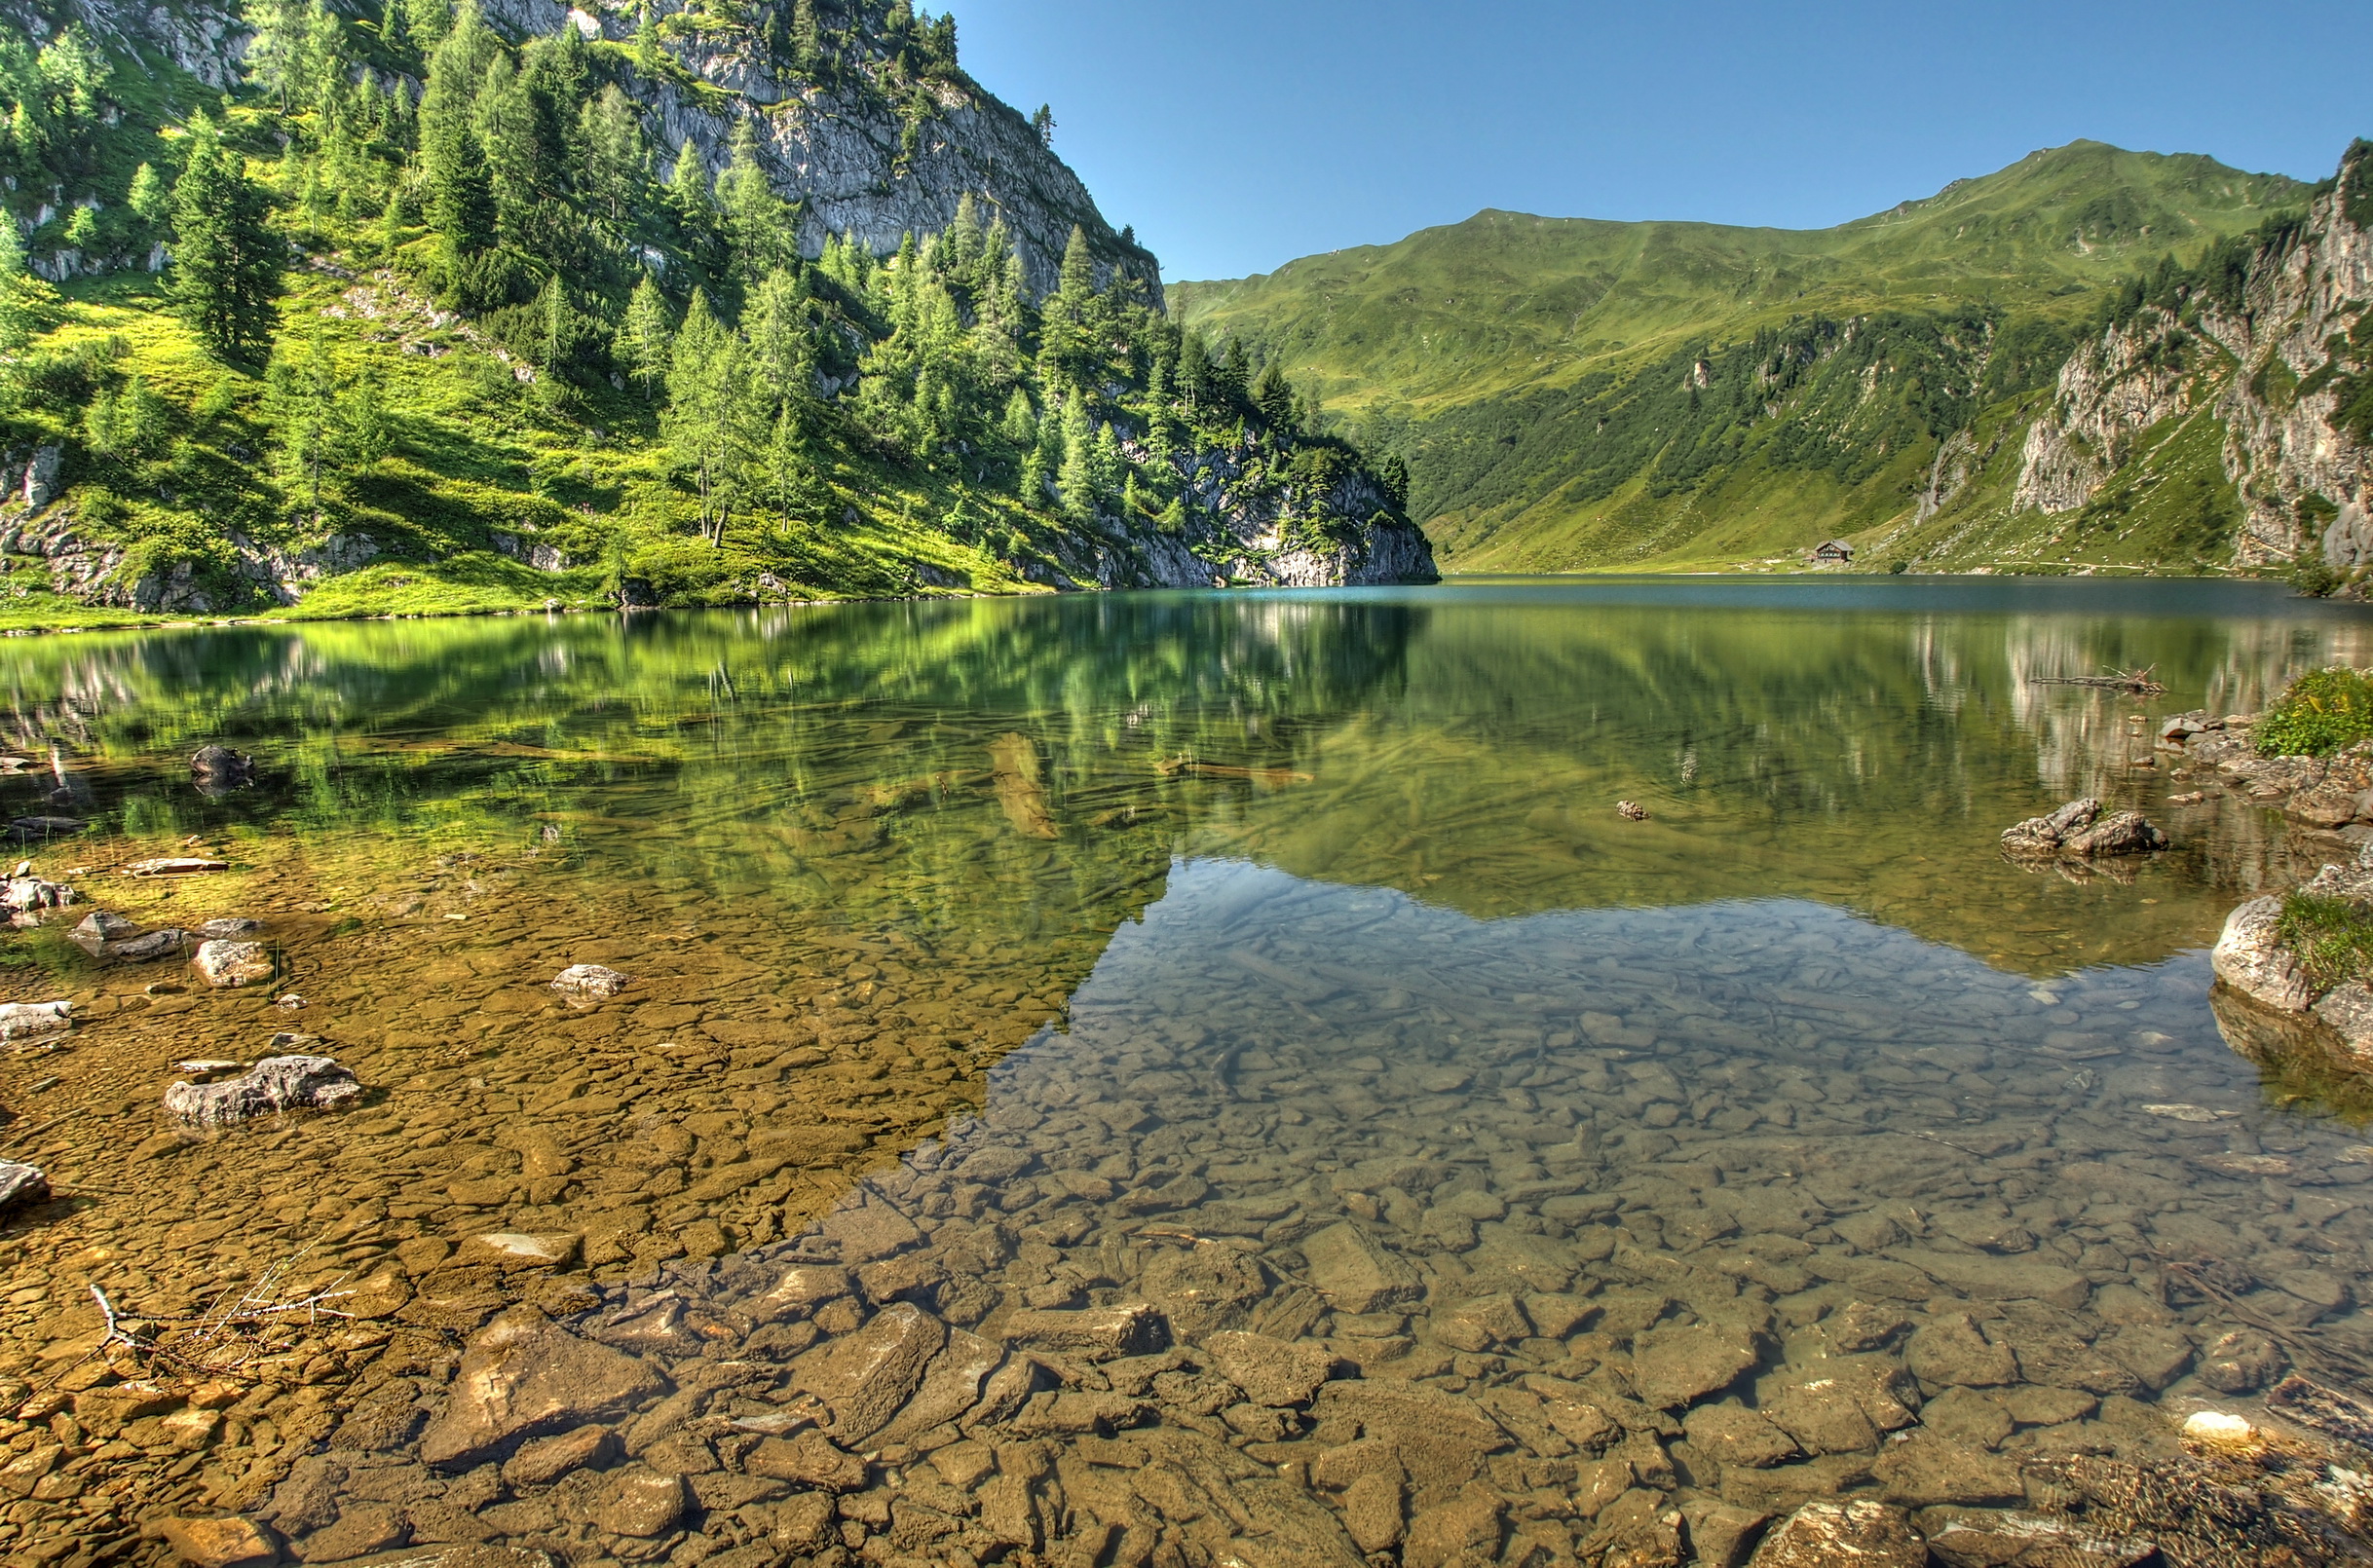 بک گراند دریاچه ی شفاف جلوی کوه های پوشیده از درخت پر طراوت